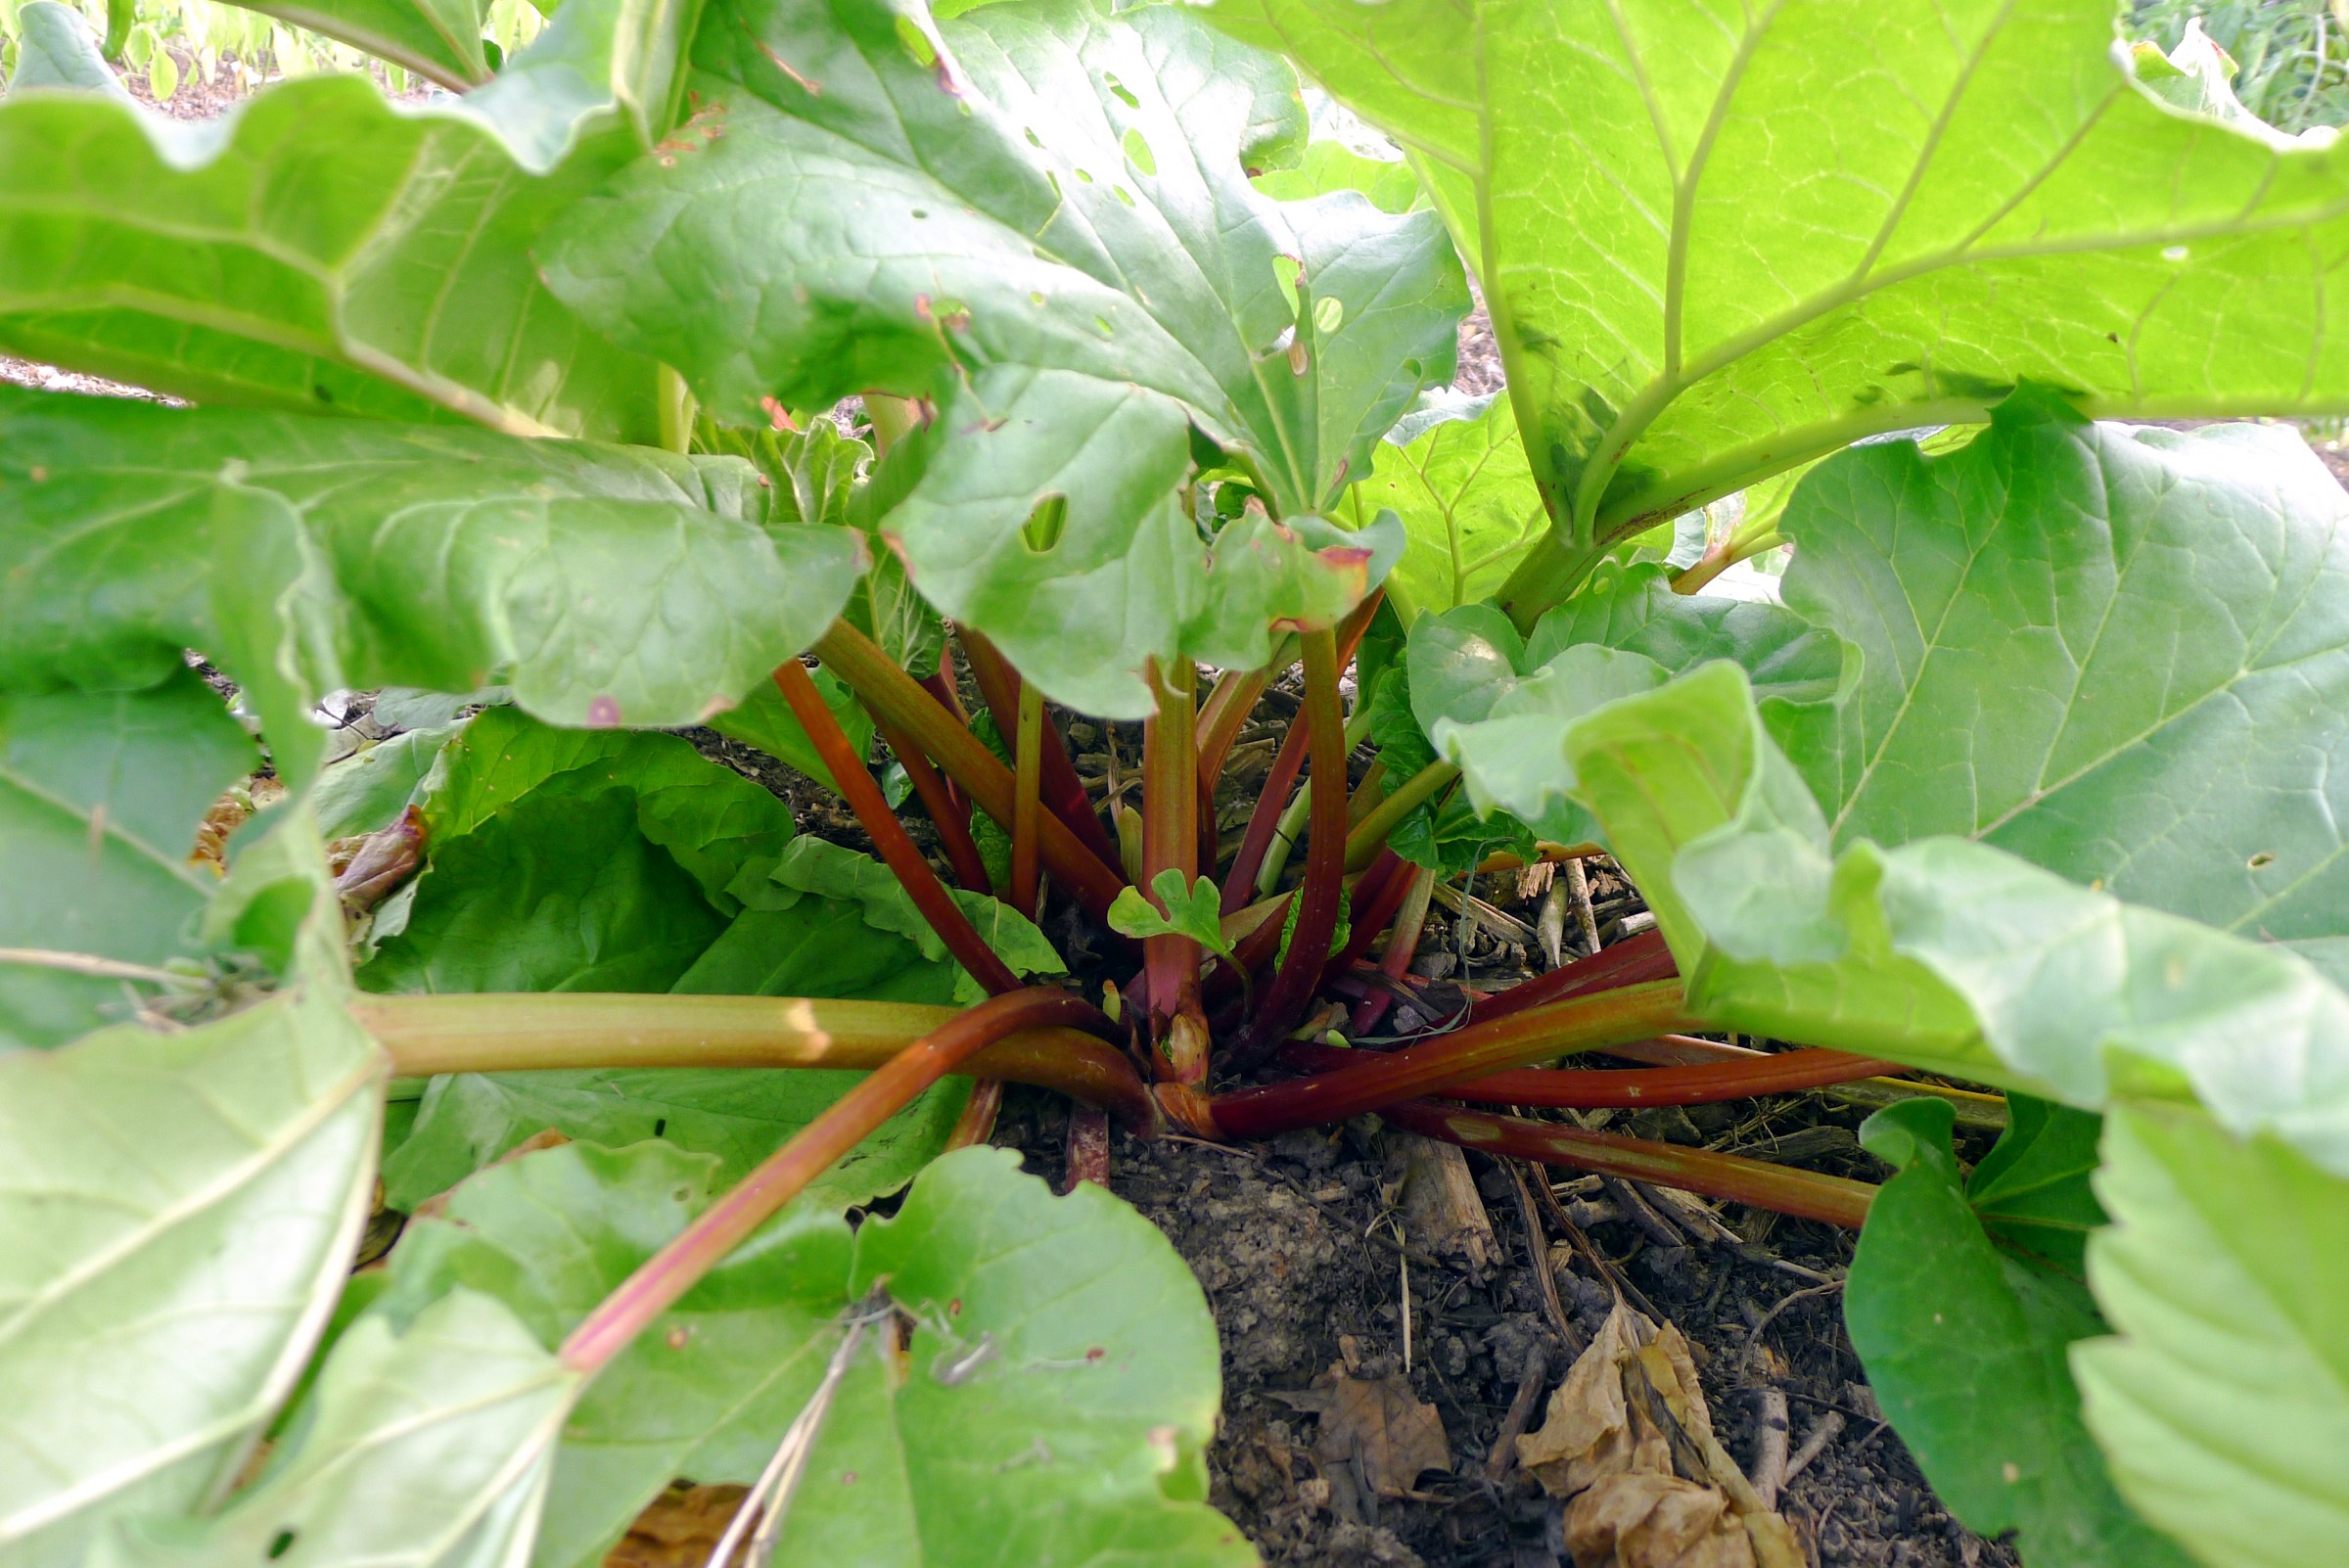 Rhubarb stalks